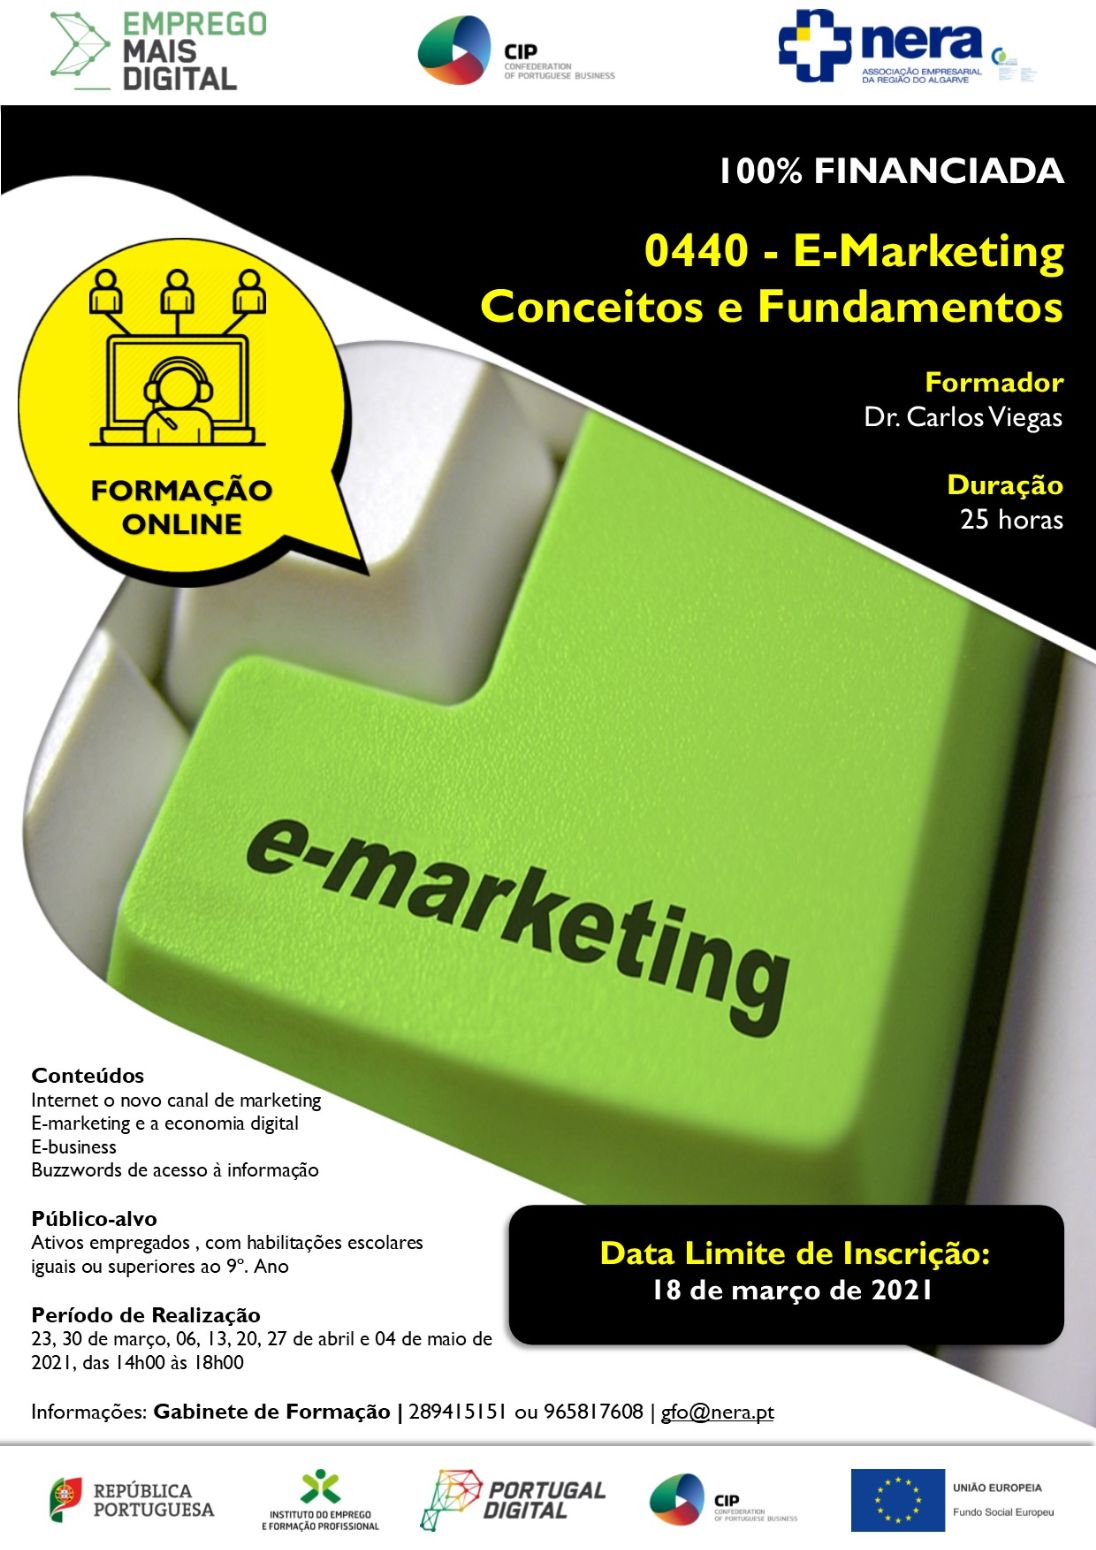 Terminam hoje as inscrições para a Formação Gratuita E-Marketing: Projecto EMPREGO + DIGITAL